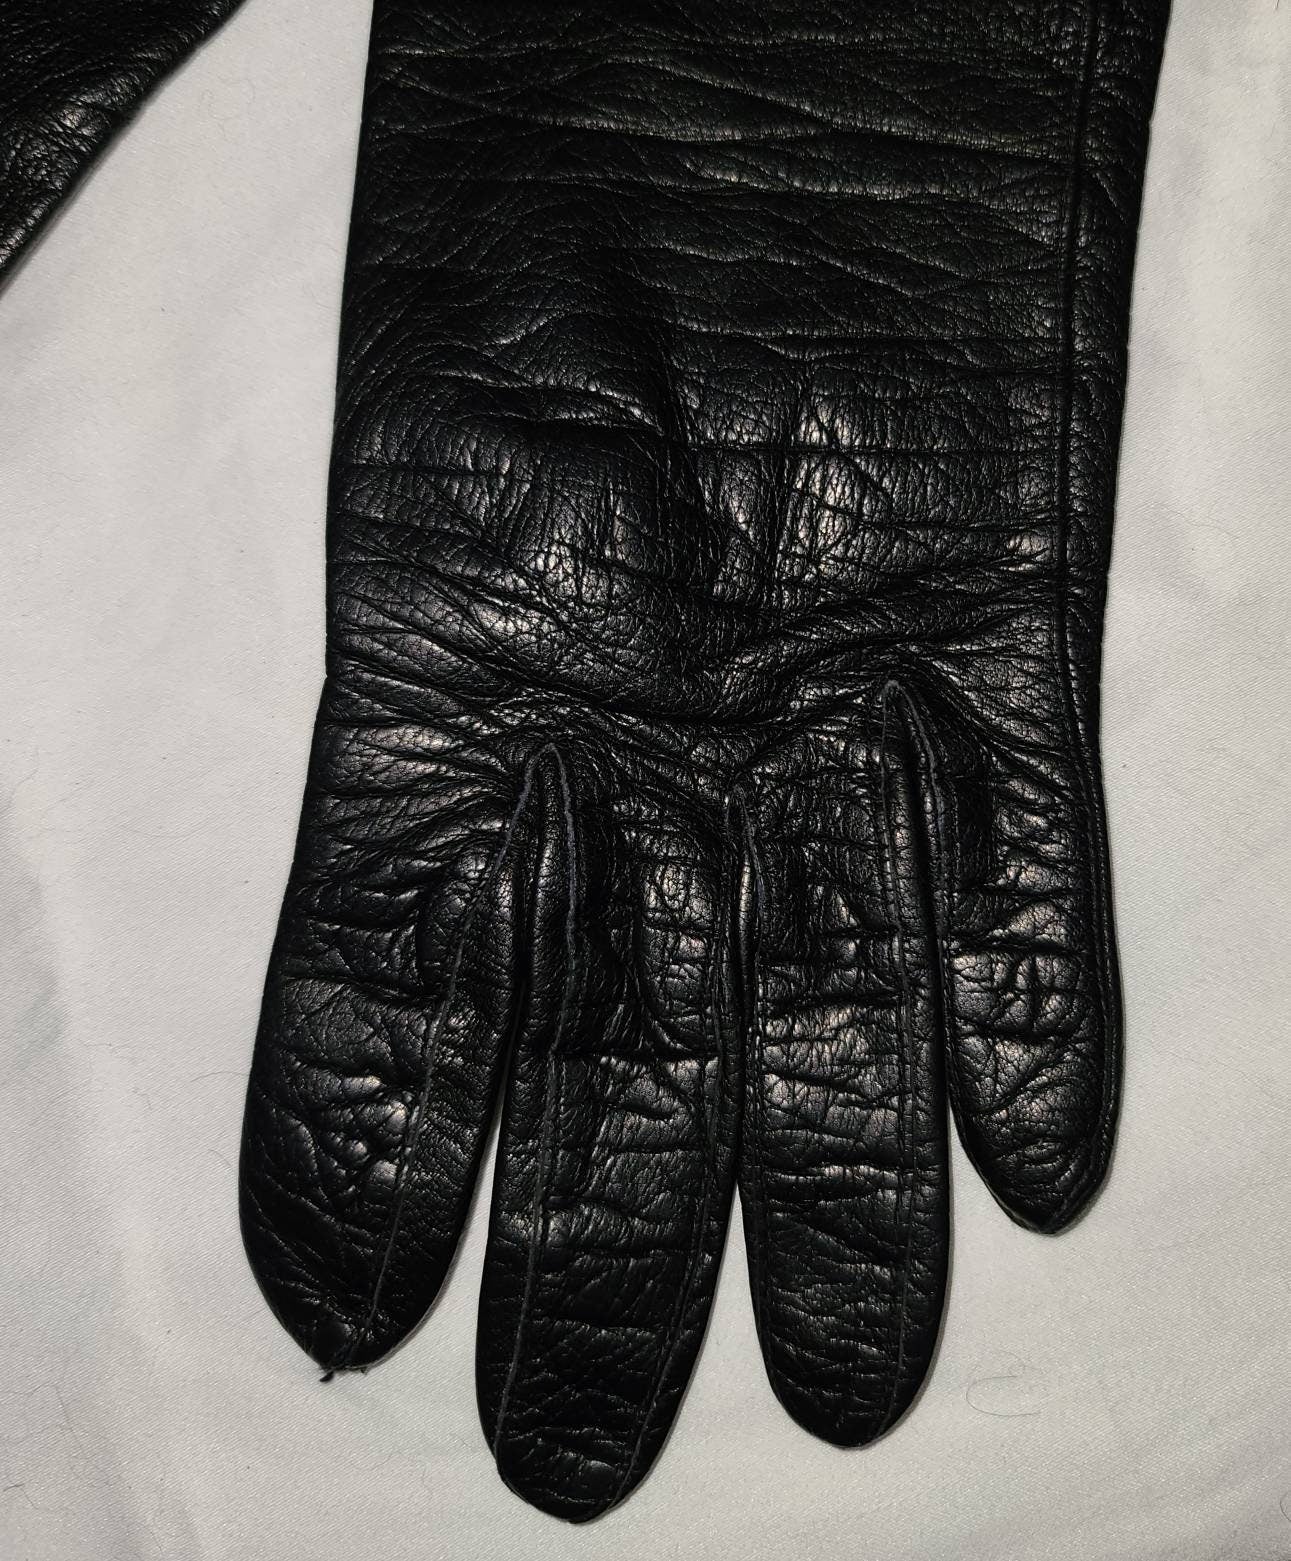 Vintage Leather Gloves 1950s Mid Length Black Leather Kidskin Lined Gloves Rockabilly Pinup Fetish